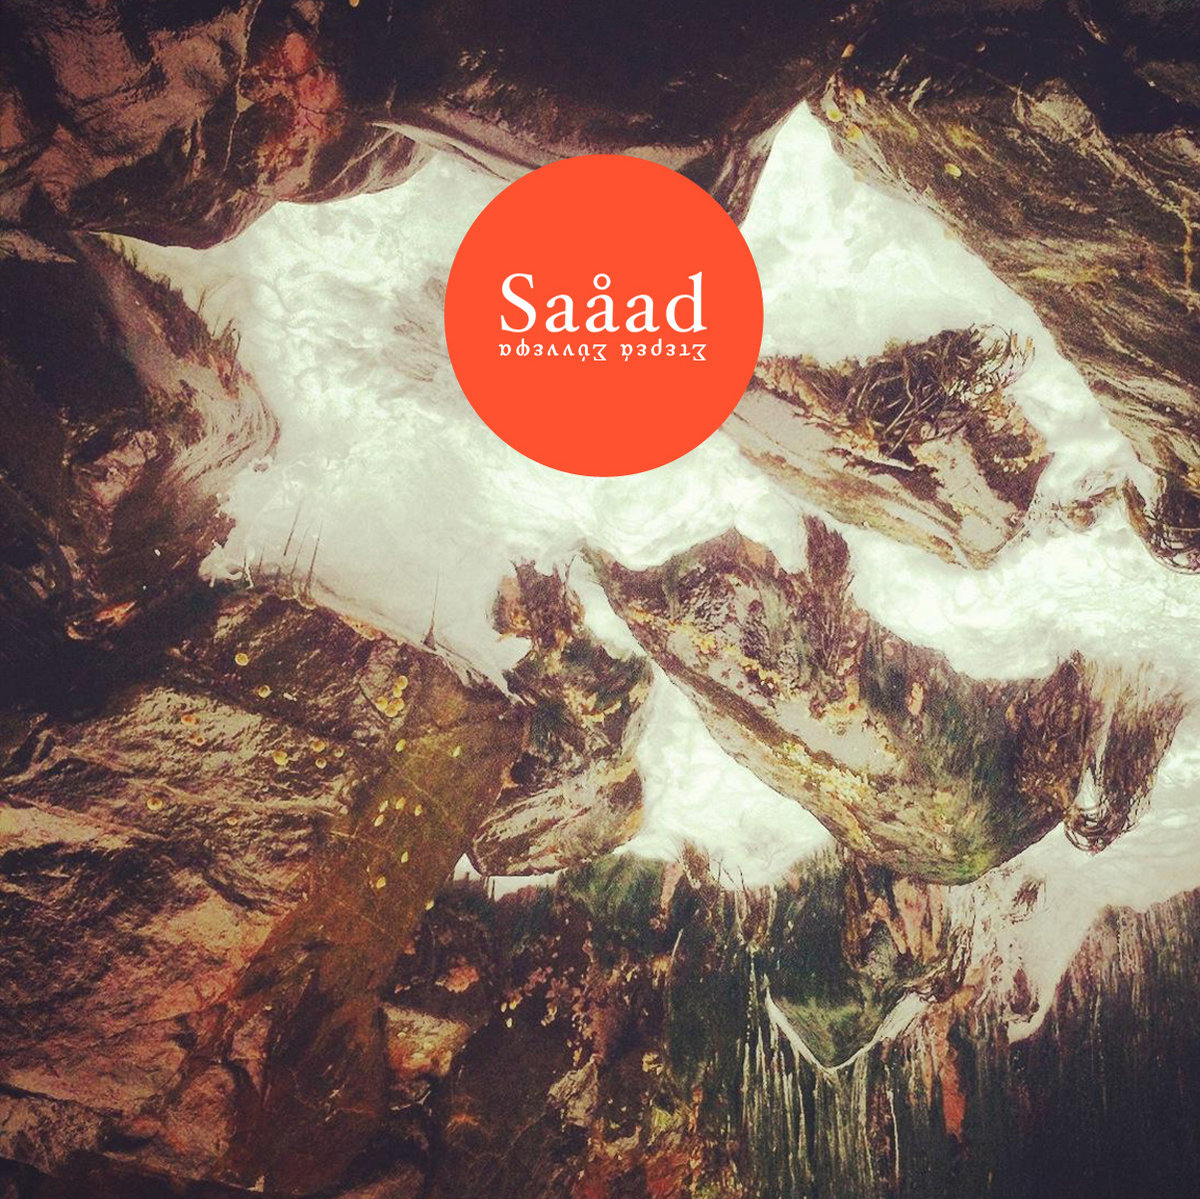 Saåad, Σ​τ​ε​ρ​ε​ά Σ​ύ​ν​ν​ε​φ​α, Digital Album Cover